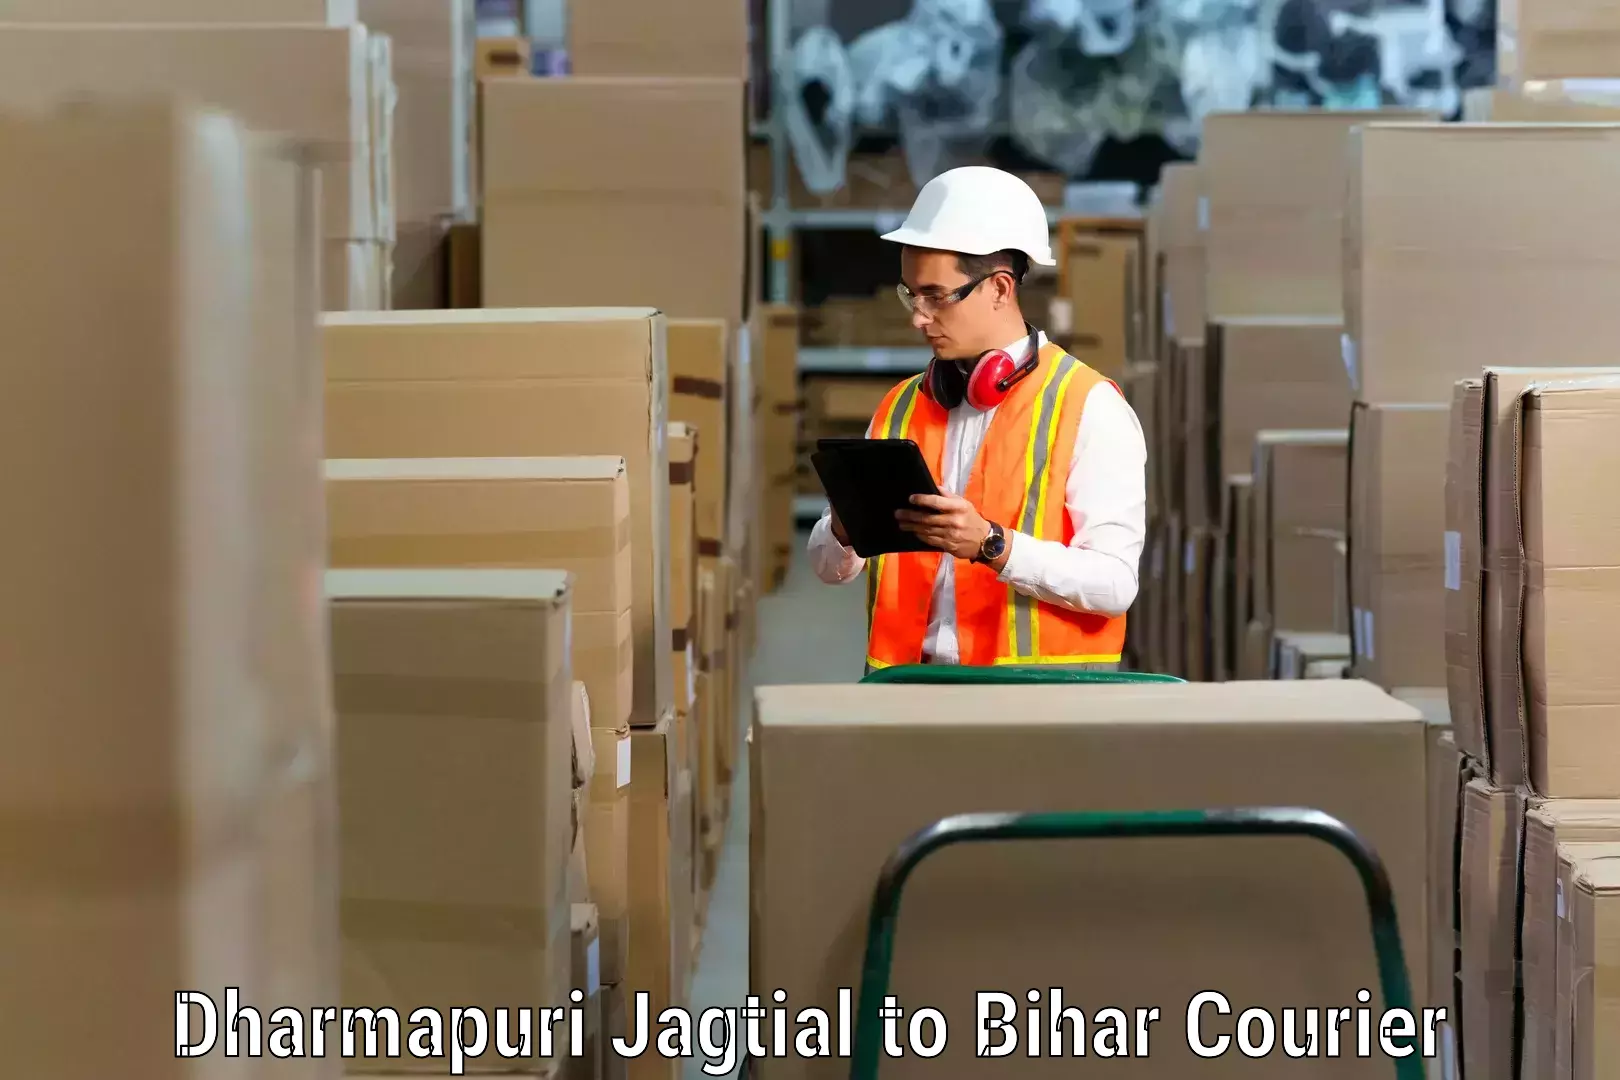 Furniture moving service Dharmapuri Jagtial to Rajgir